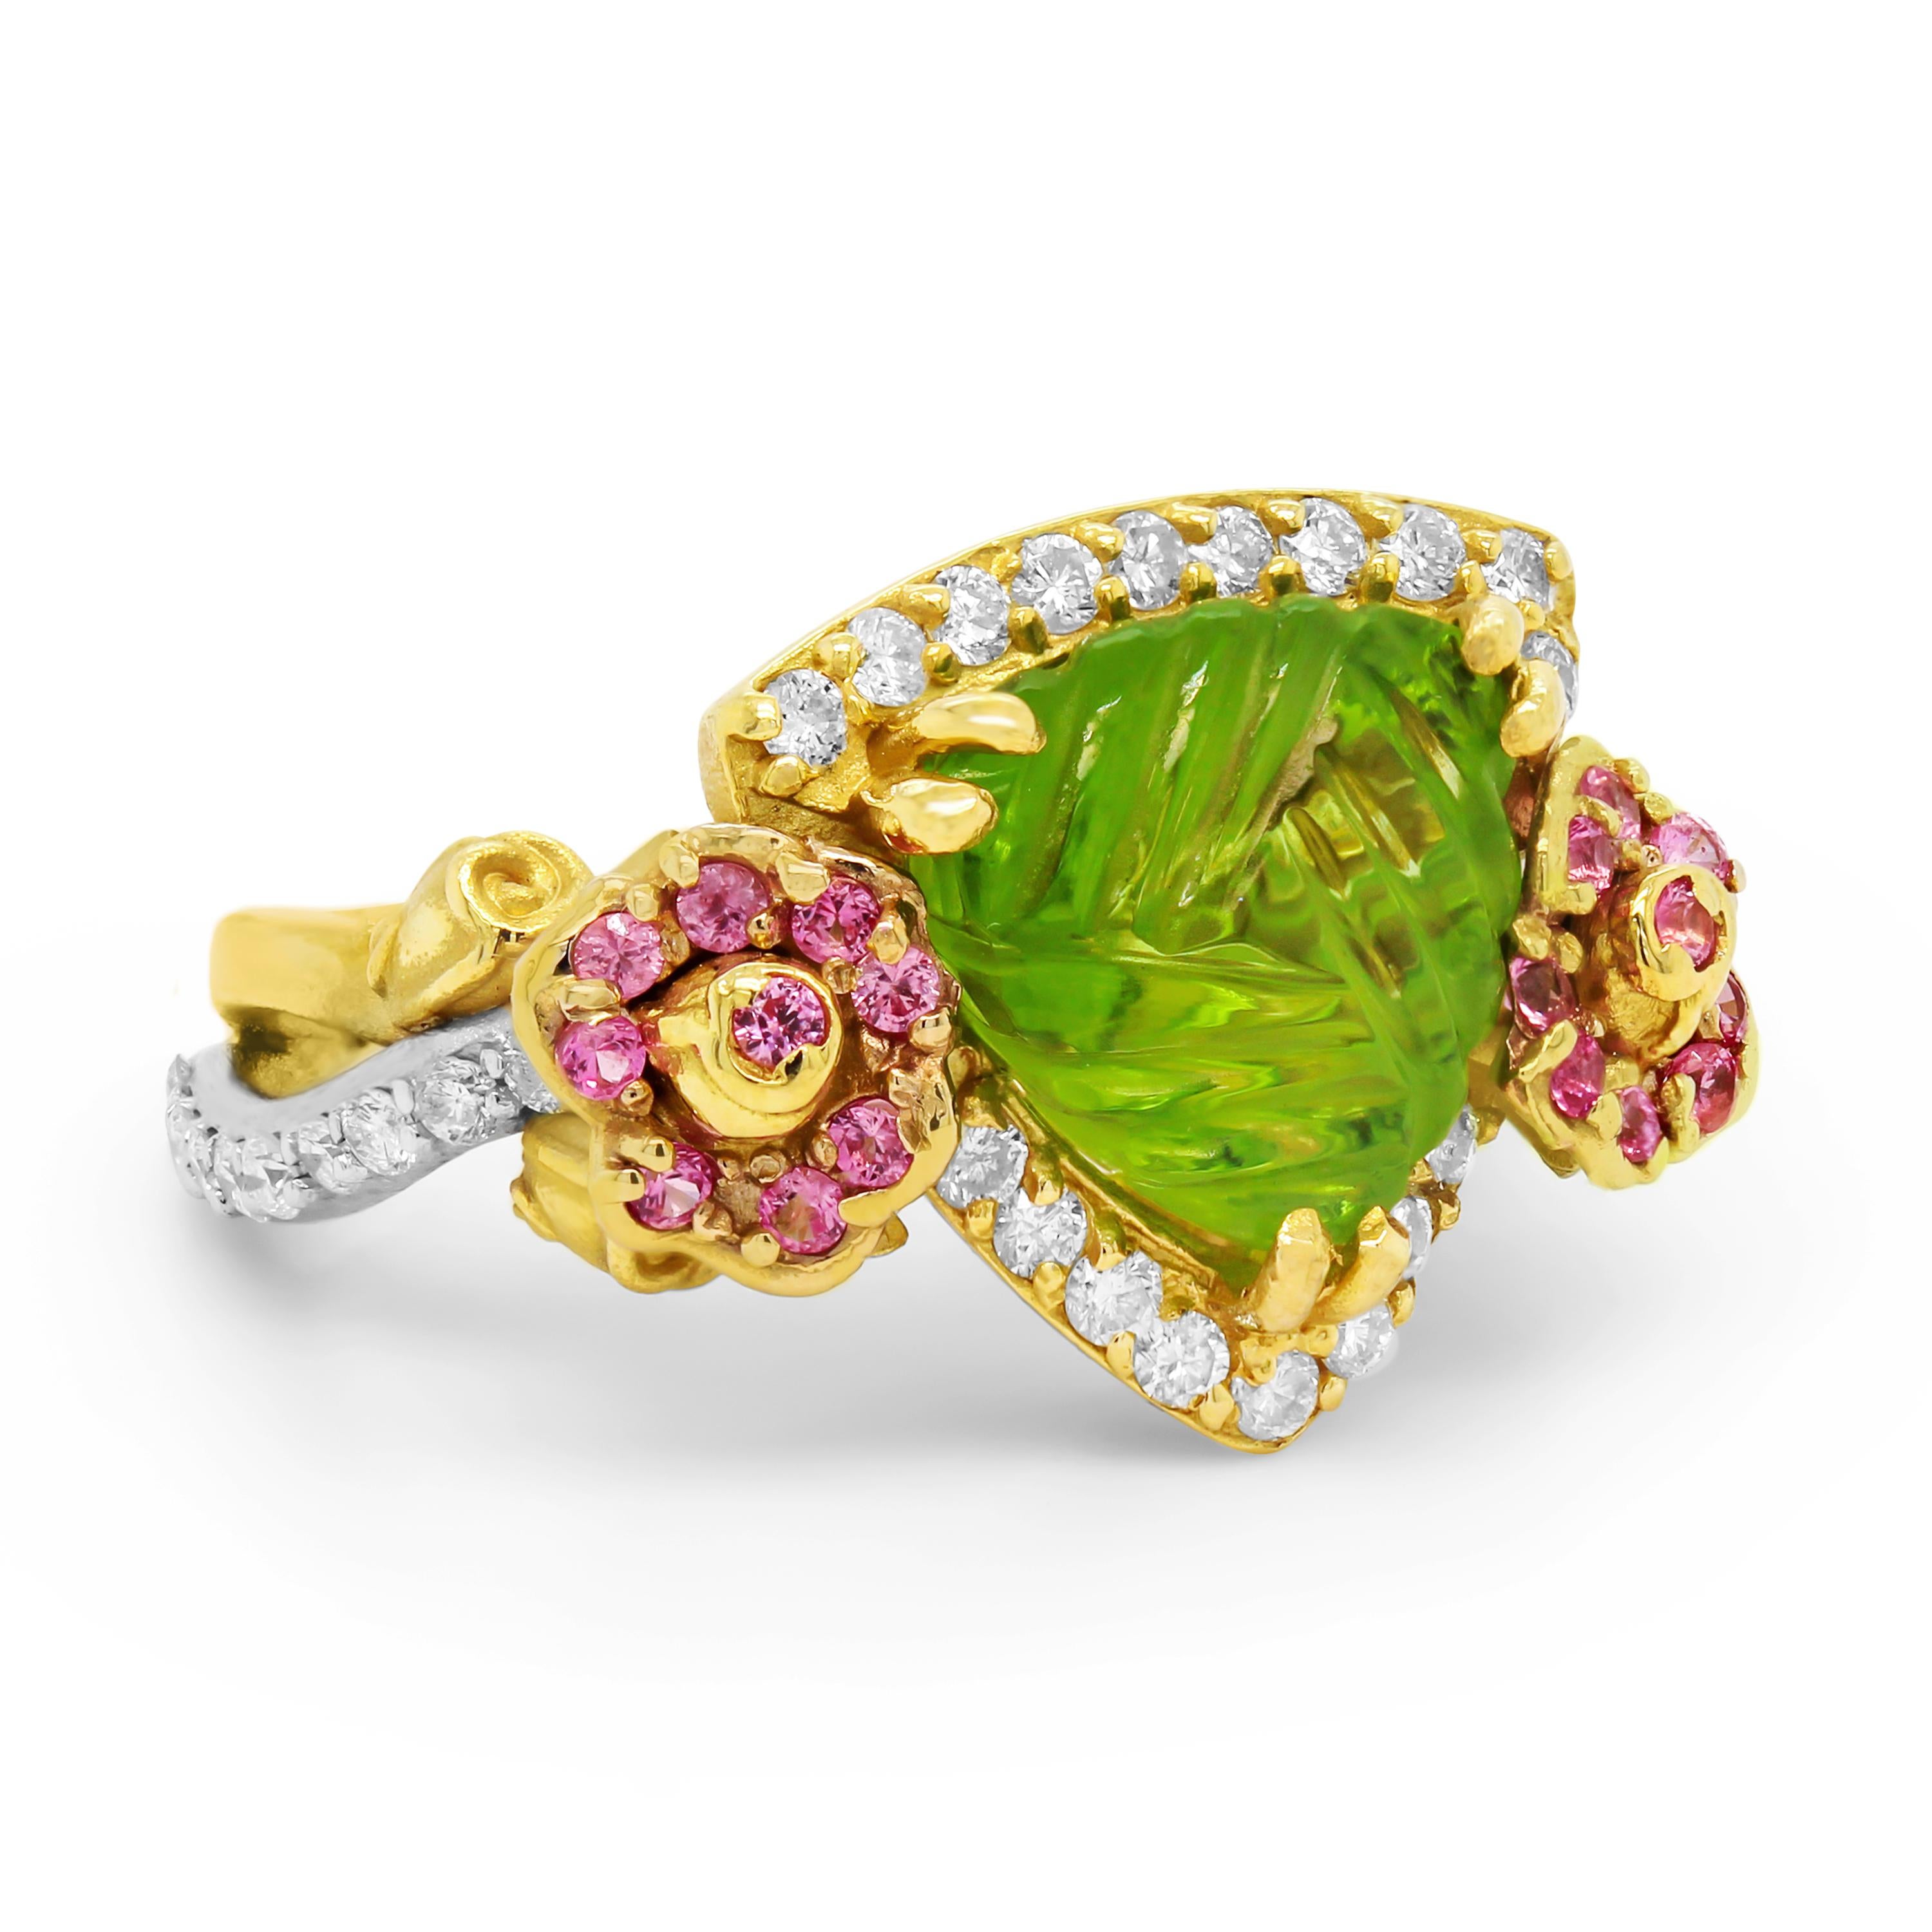 Stambolian 18K Two Tone Gold Floral Ring mit Trillion-Cut, geschnitzt Peridot Zentrum mit rosa Saphiren und Diamanten

Dieses Meisterwerk von Stambolian zeichnet sich durch zwei Rosen auf jeder Seite des Ringbandes und einen speziell geschnitzten,